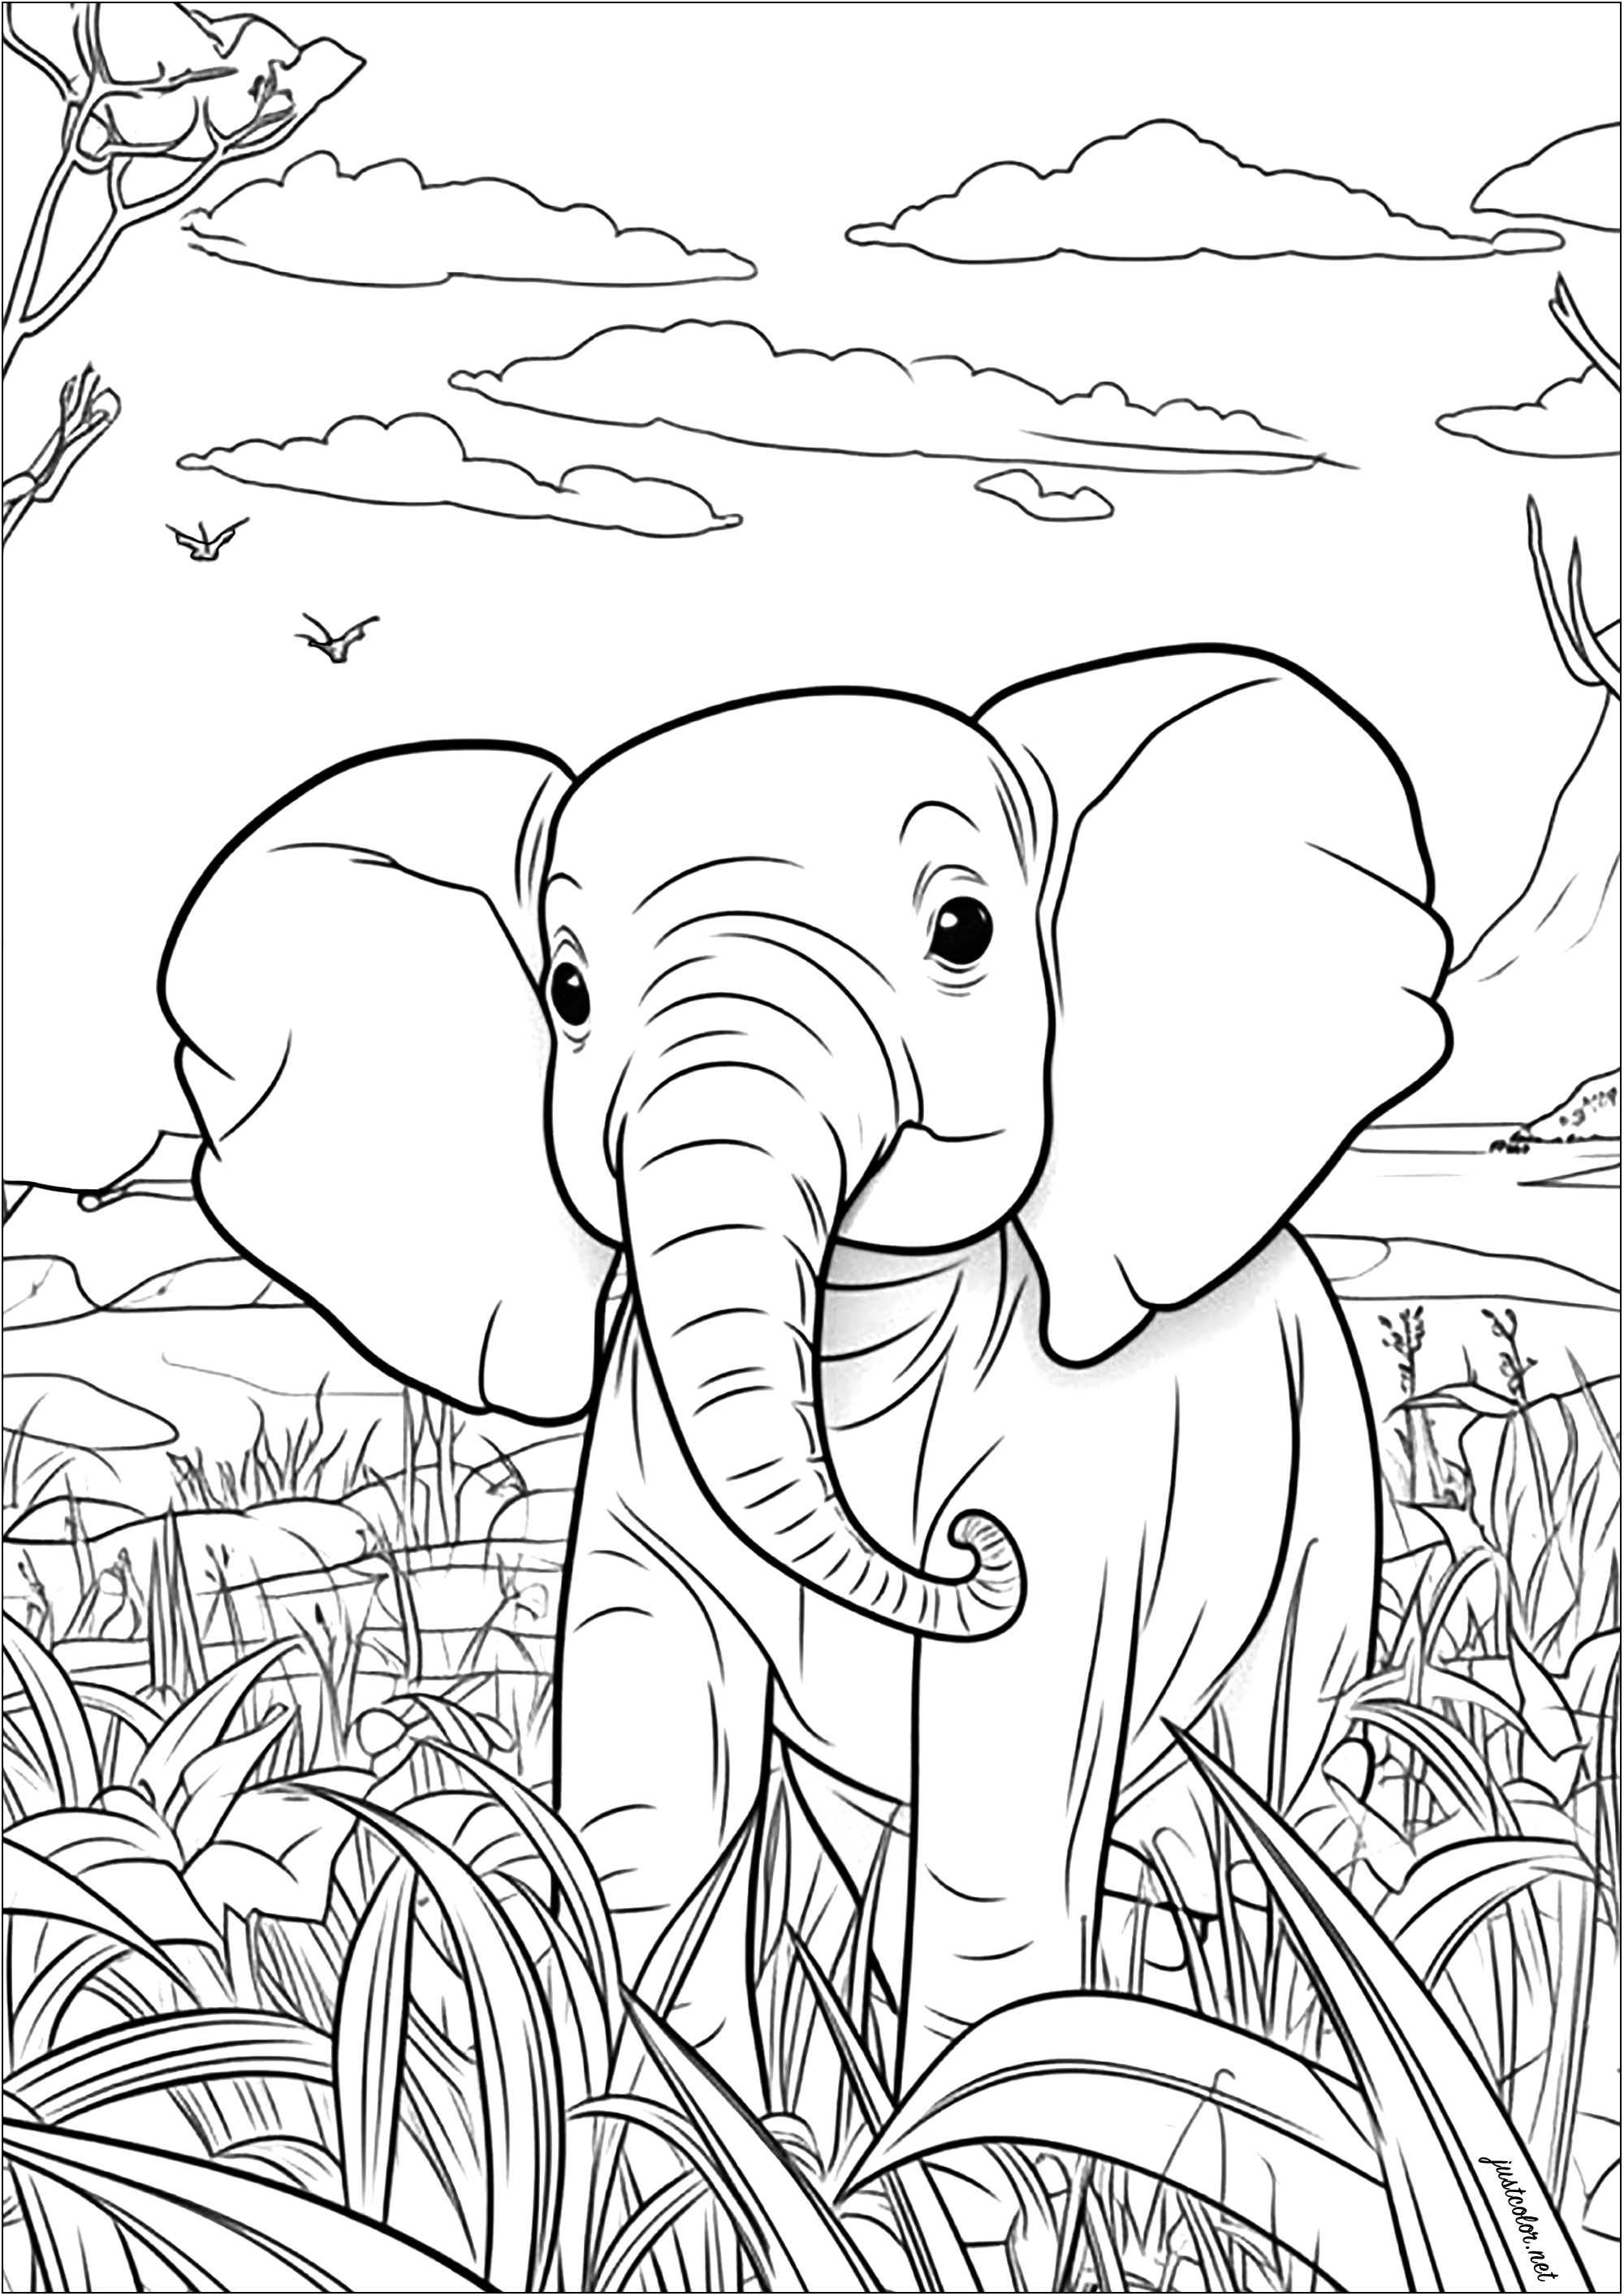 Questa bella pagina da colorare mostra un giovane elefante che passeggia nella Savana. Si può notare che è circondato da alberi ed erbe alte.